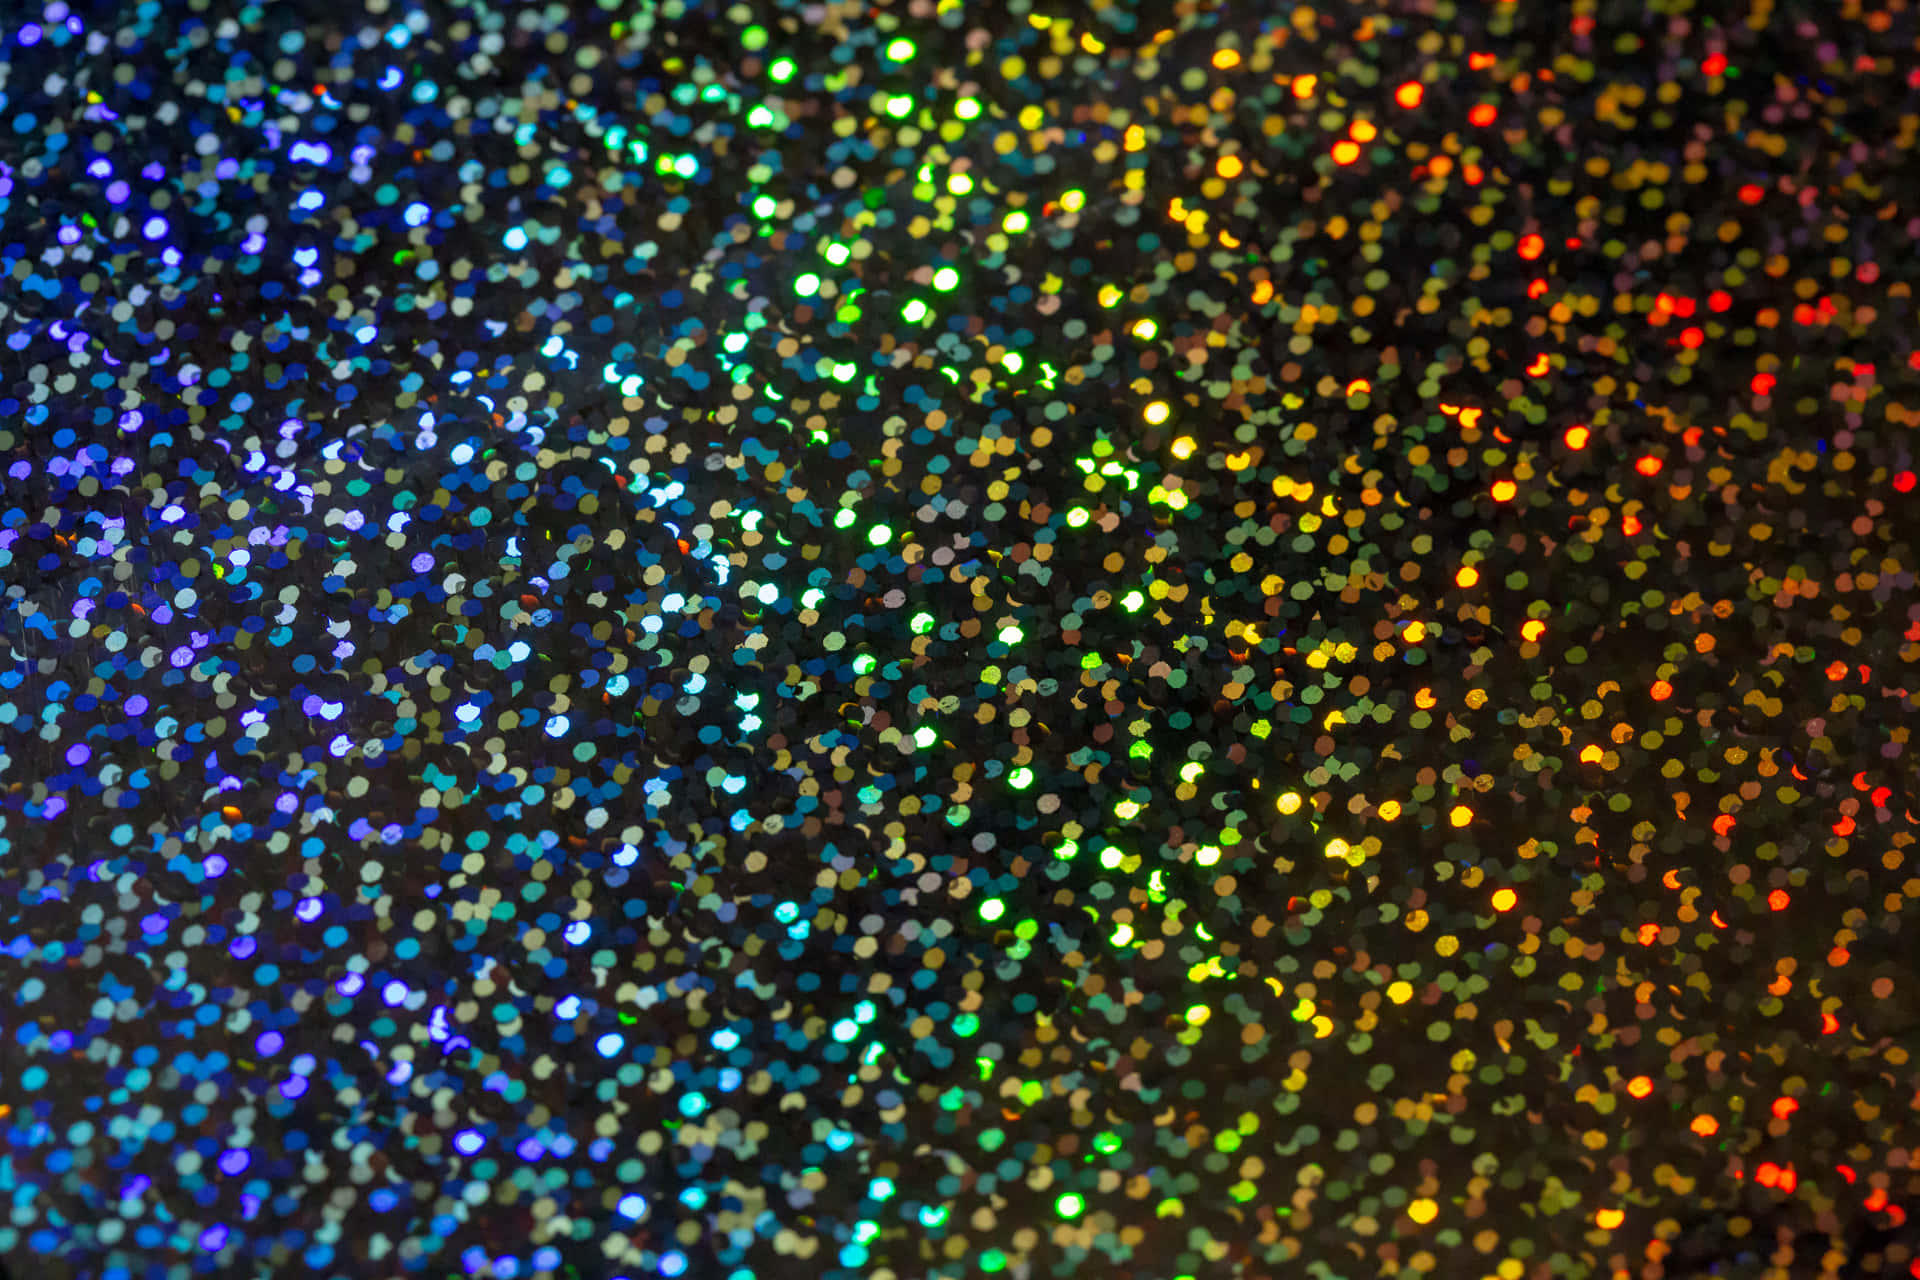 Regnbue Glitter 5472 X 3648 Wallpaper